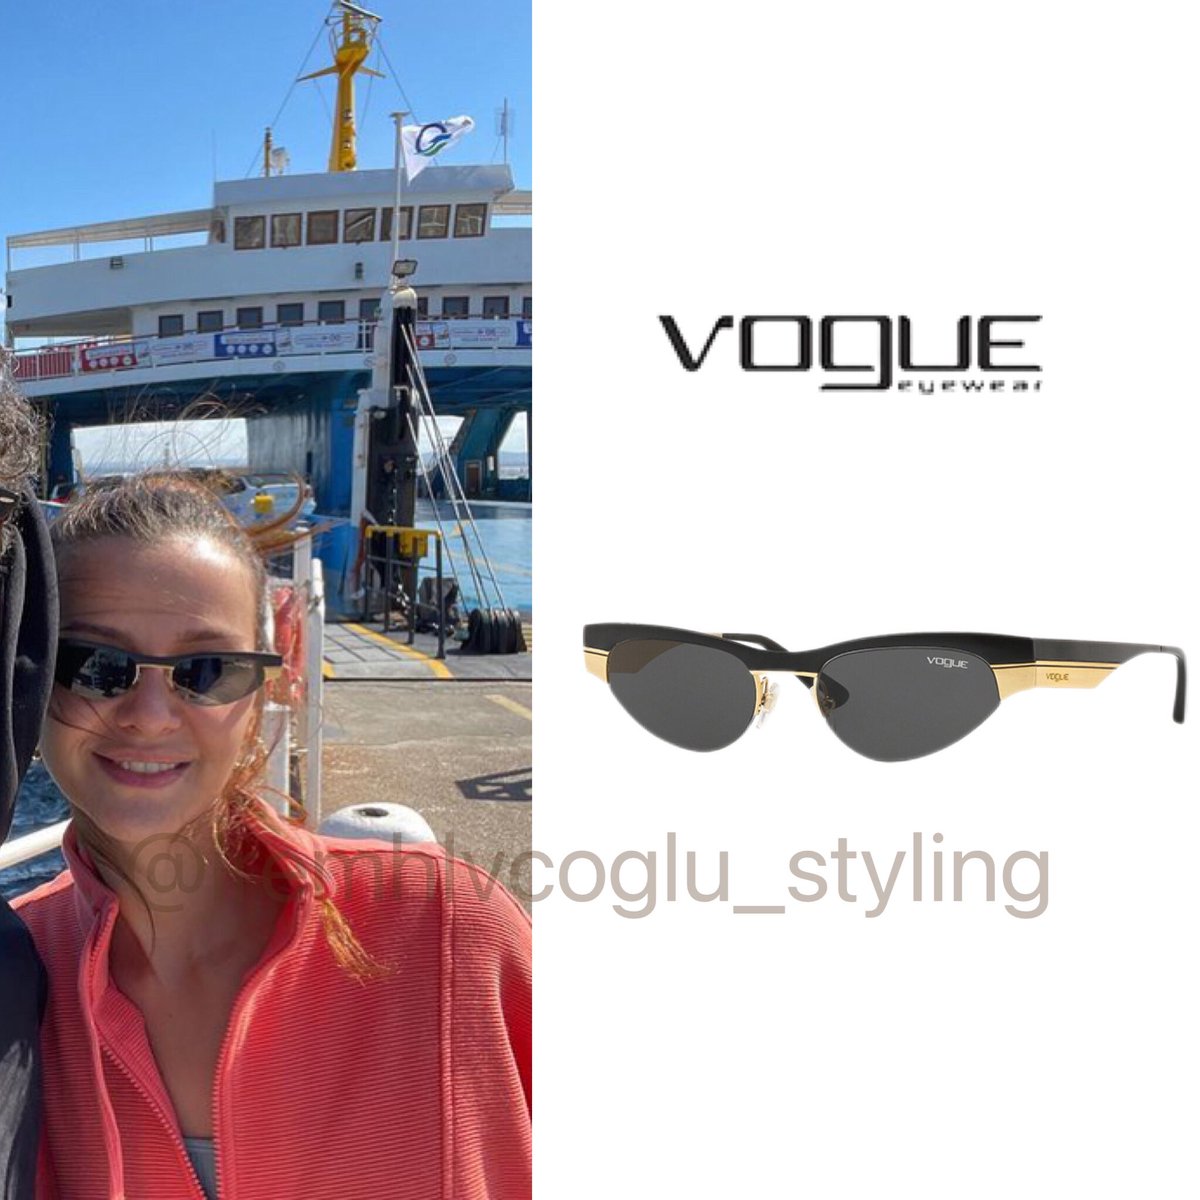 İrem’in kullandığı gözlüğün markası : @vogueeyewear fiyatı : 2.485 TL ( stokta yok ) 

#iremhelvacıoğlu